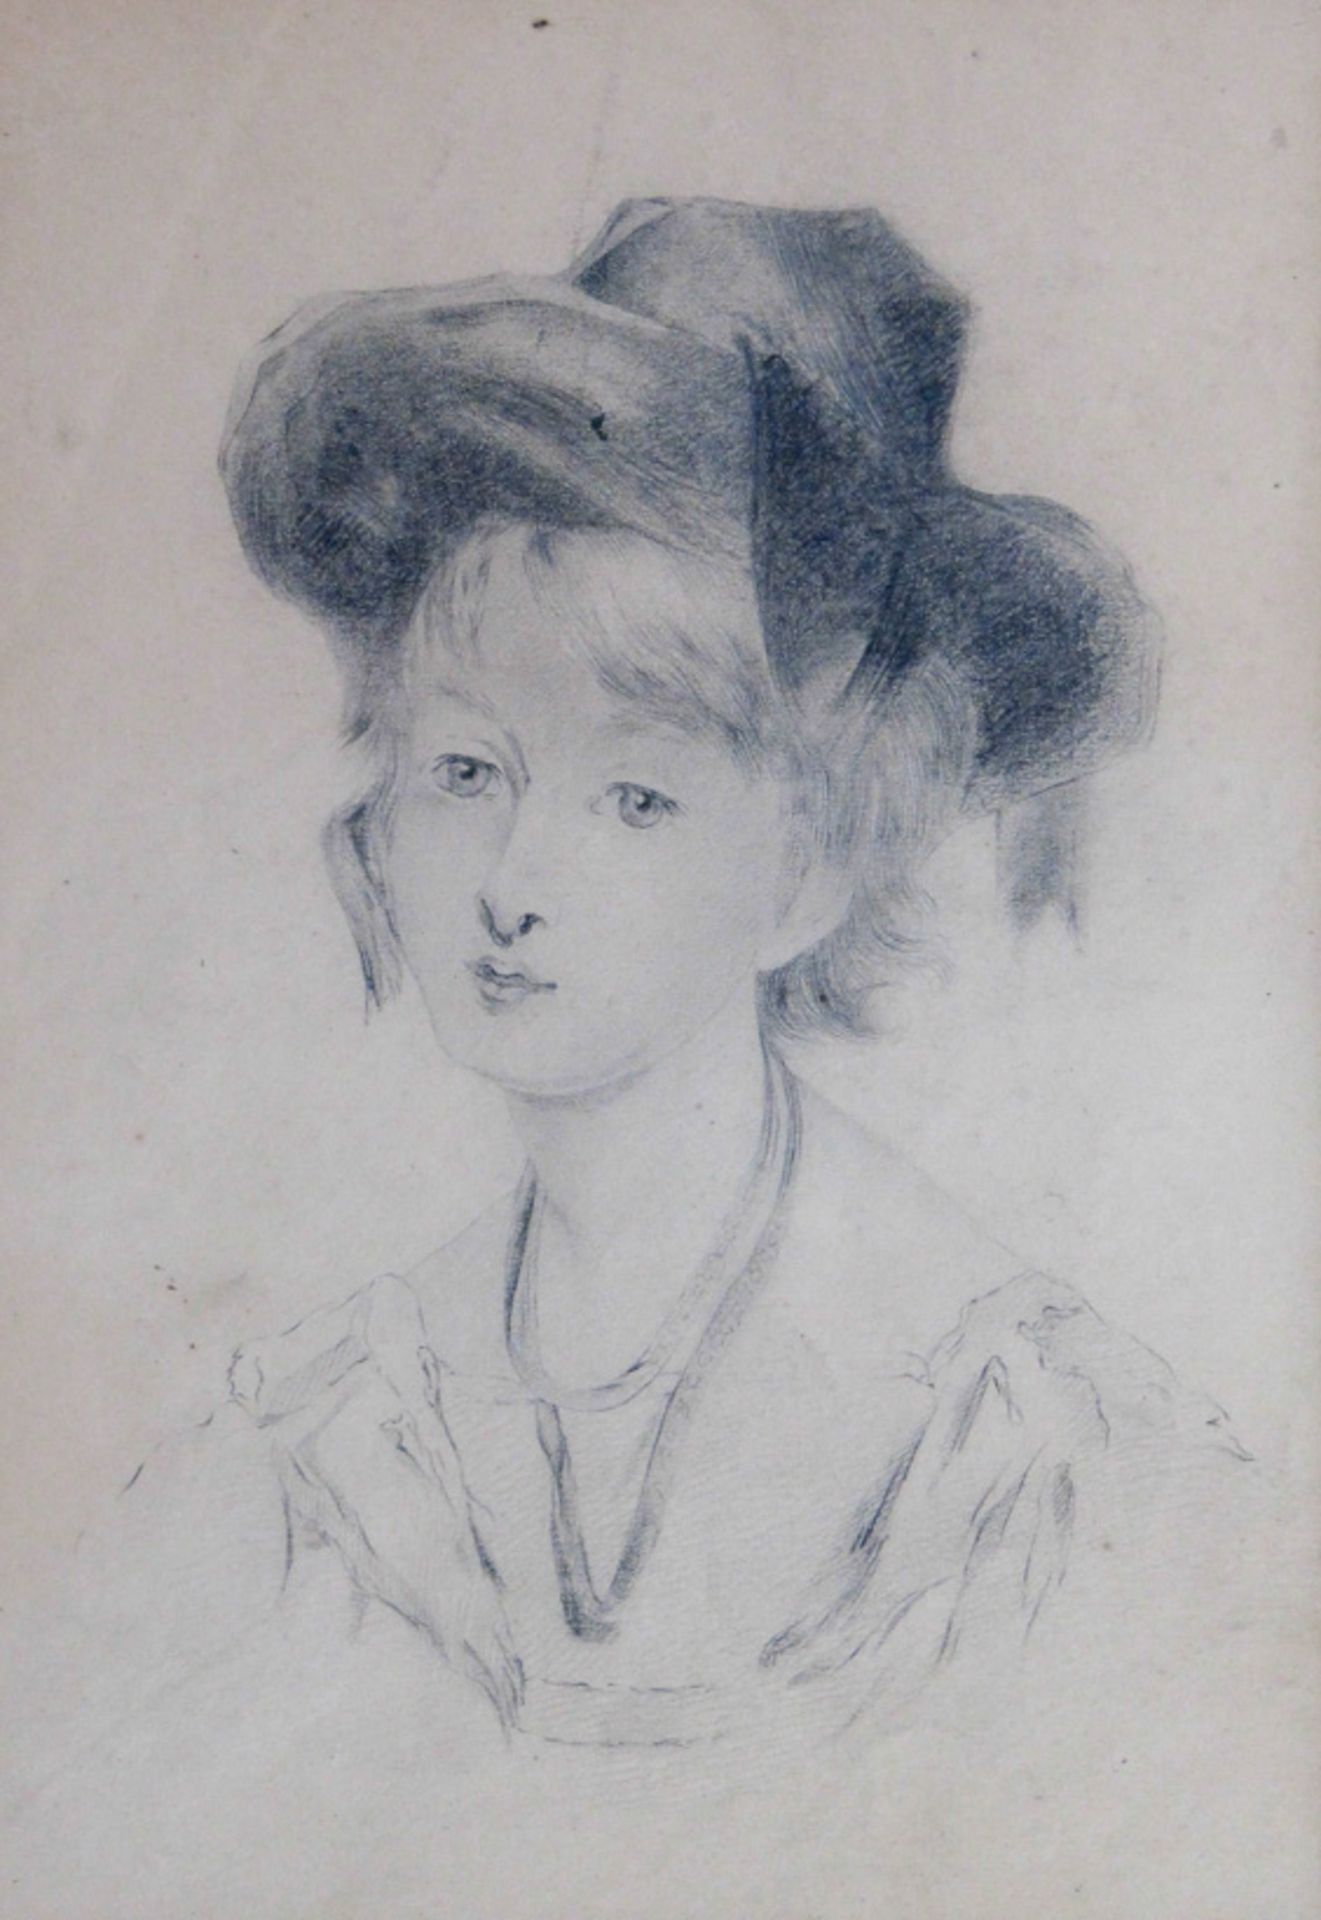 Lawrence, Sir Thomas (1779-1830) , Art desJunge Dame mit schleifengeschmücktem HutBrustbildnis.